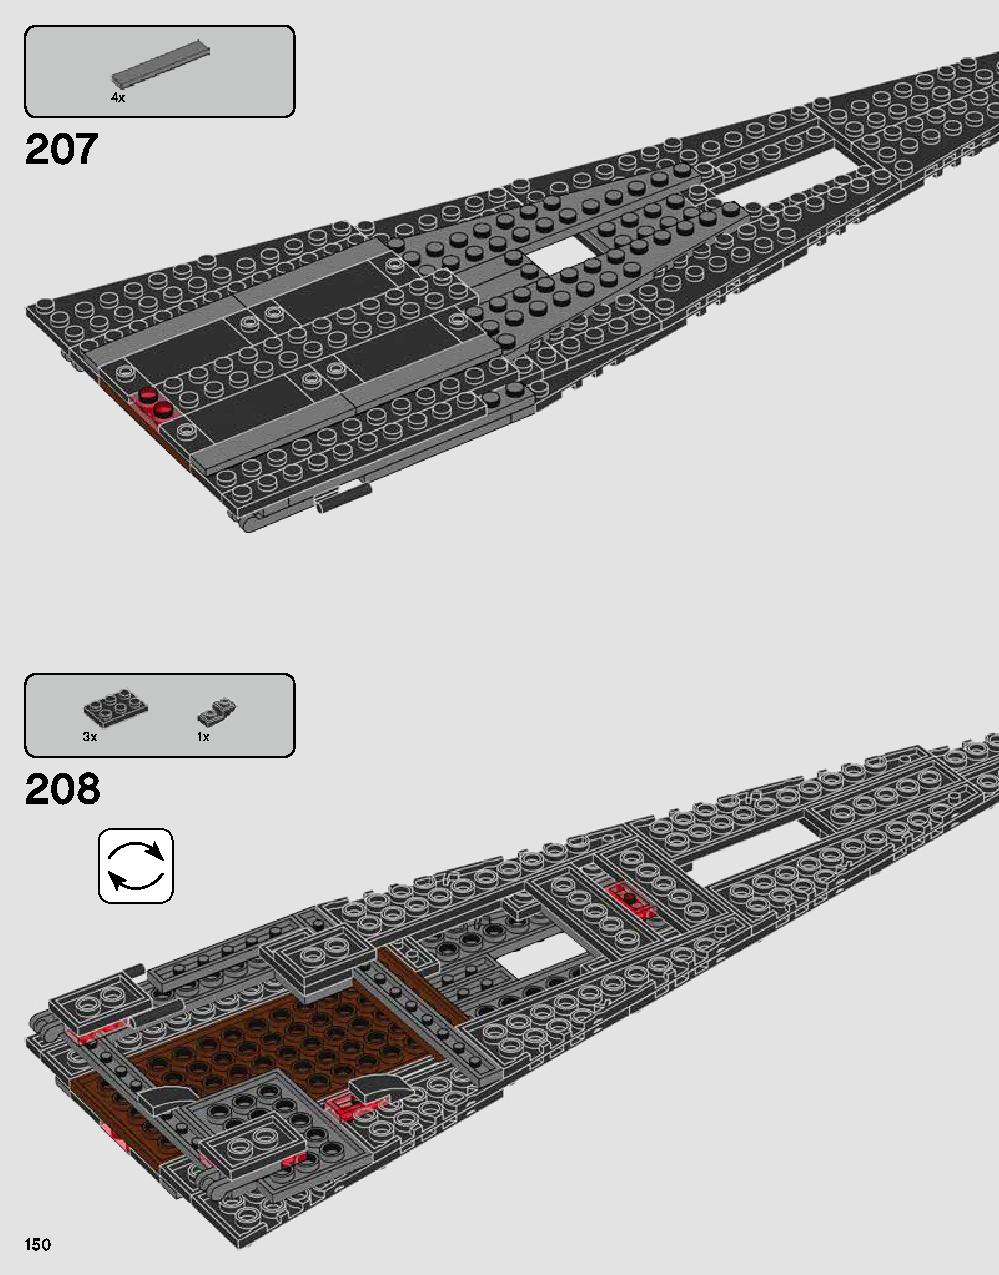 스타워즈 다스베이더 캐슬 75251 레고 세트 제품정보 레고 조립설명서 150 page